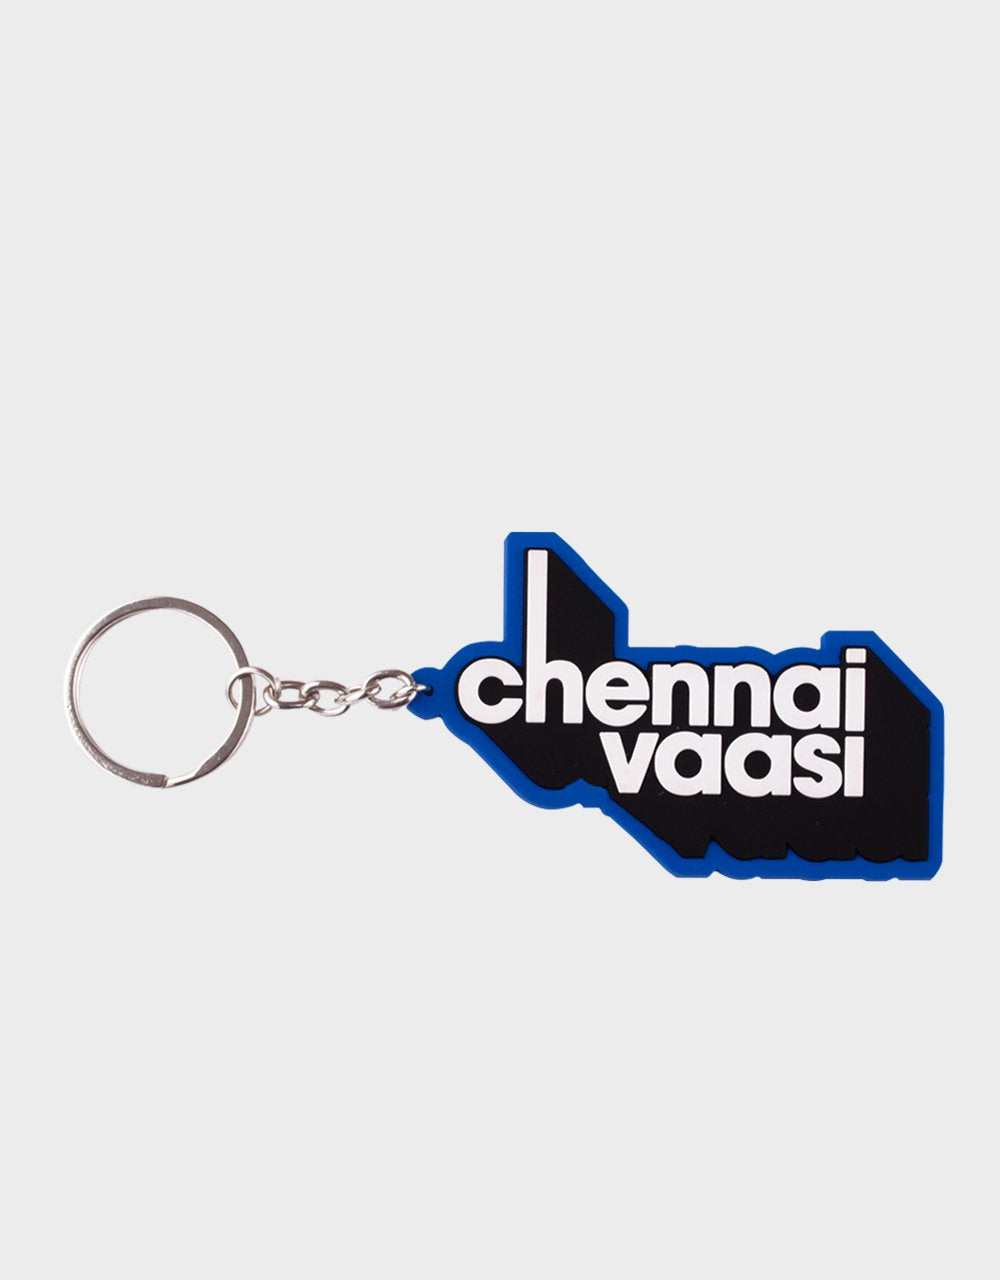 Chennai Vaasi Blue Keychain - Angi | Tamil T-shirt | Chennai T-shirt